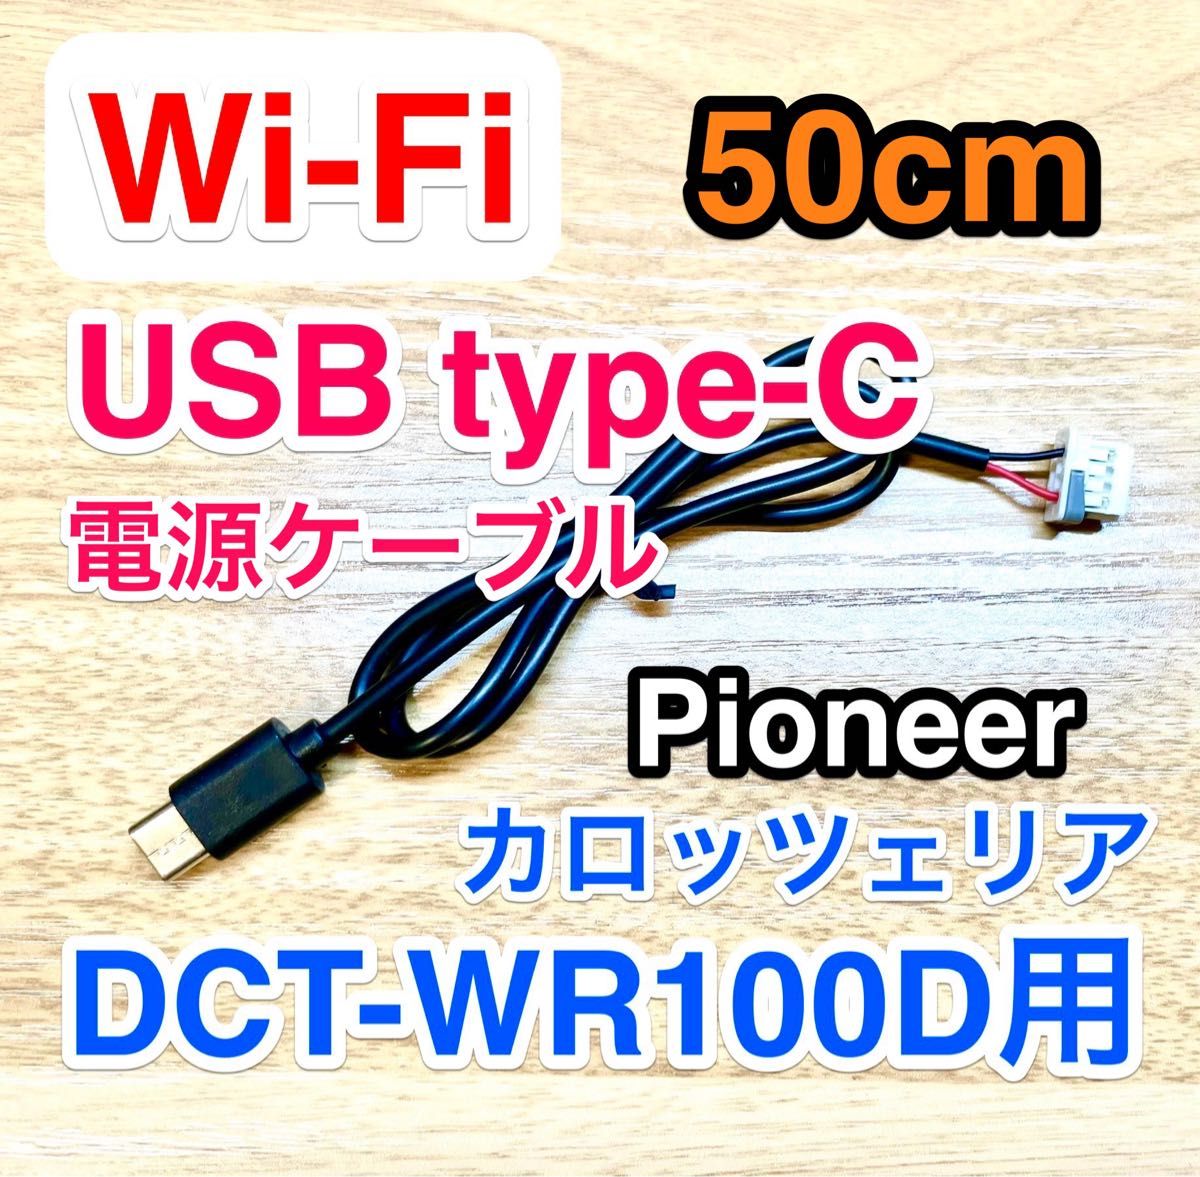 DCT-WR100D用 USB type-C 充電 コード50cm ロックあり